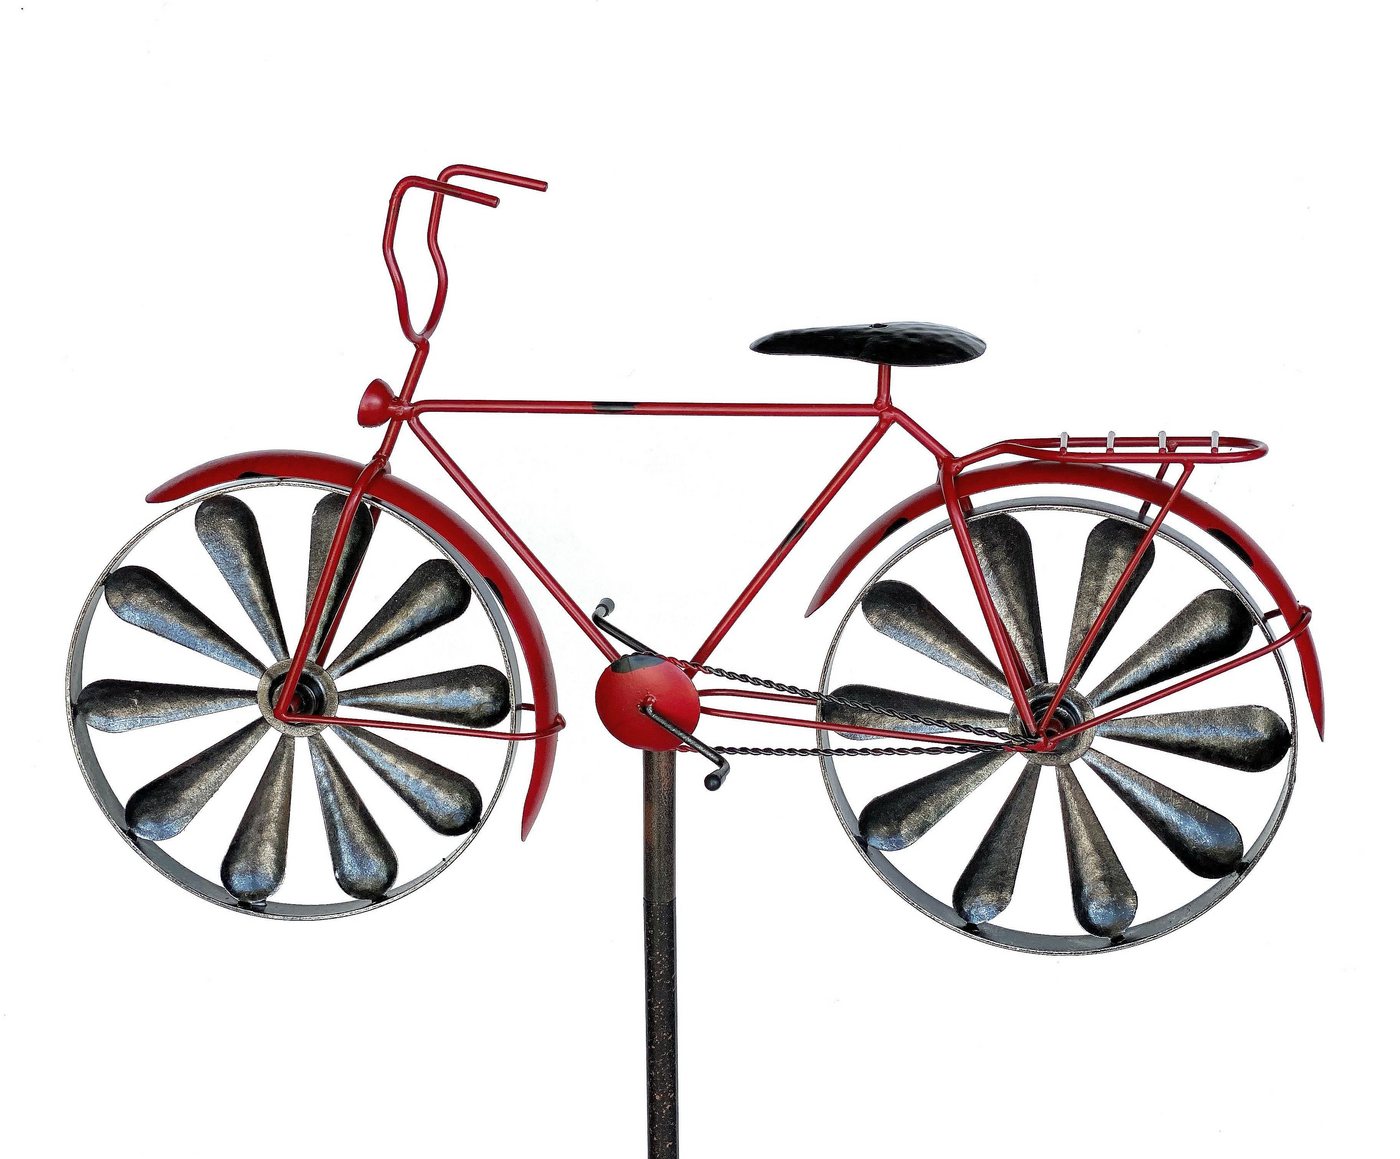 DanDiBo Gartenstecker Gartenstecker Metall Fahrrad XL 160 cm Rot 96100 Shabby Windspiel Windrad Wetterfest Gartendeko Garten Gartenstab Bodenstecker von DanDiBo